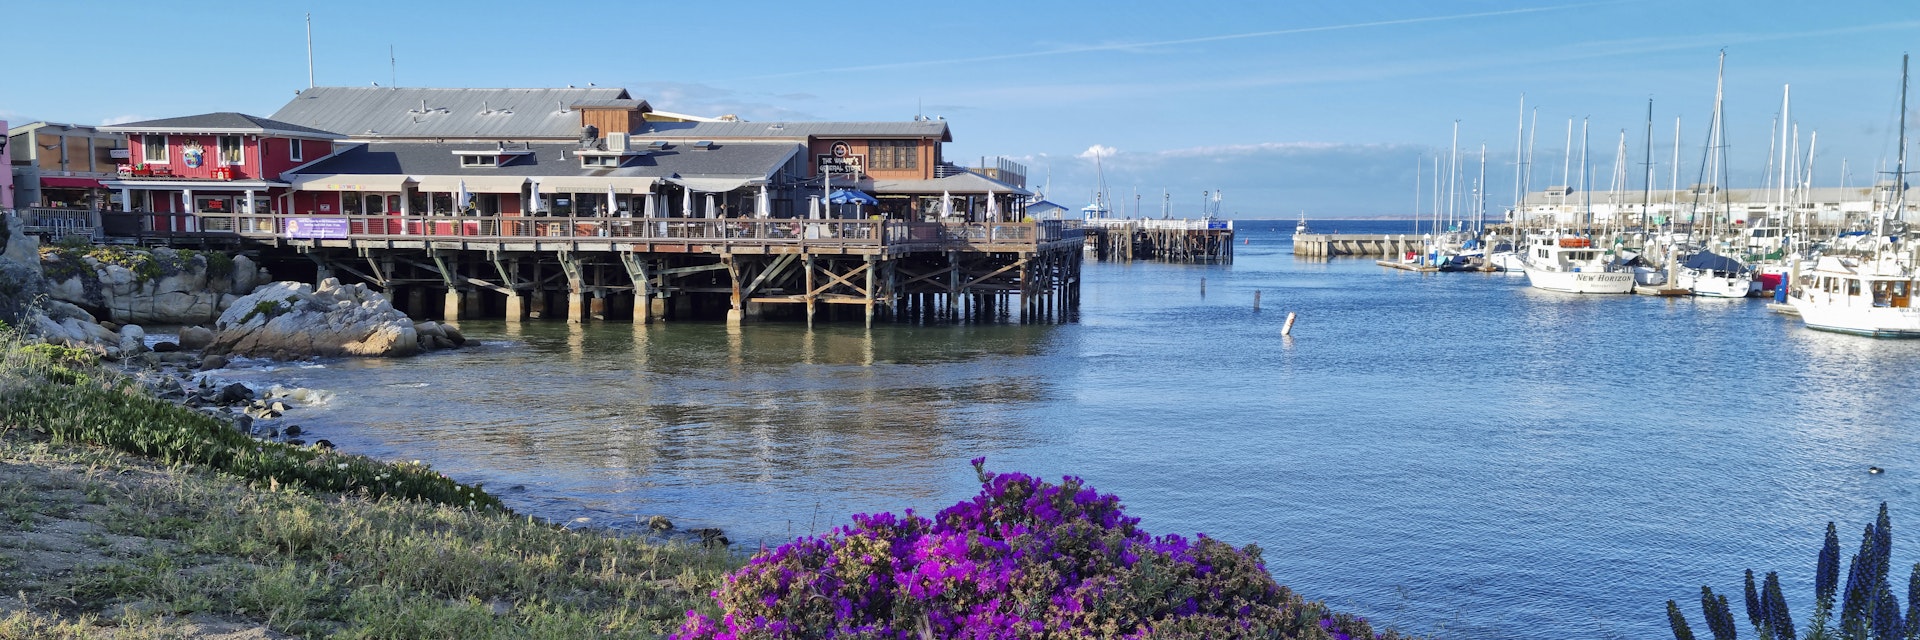 Fisherman's Wharf in Monterey.